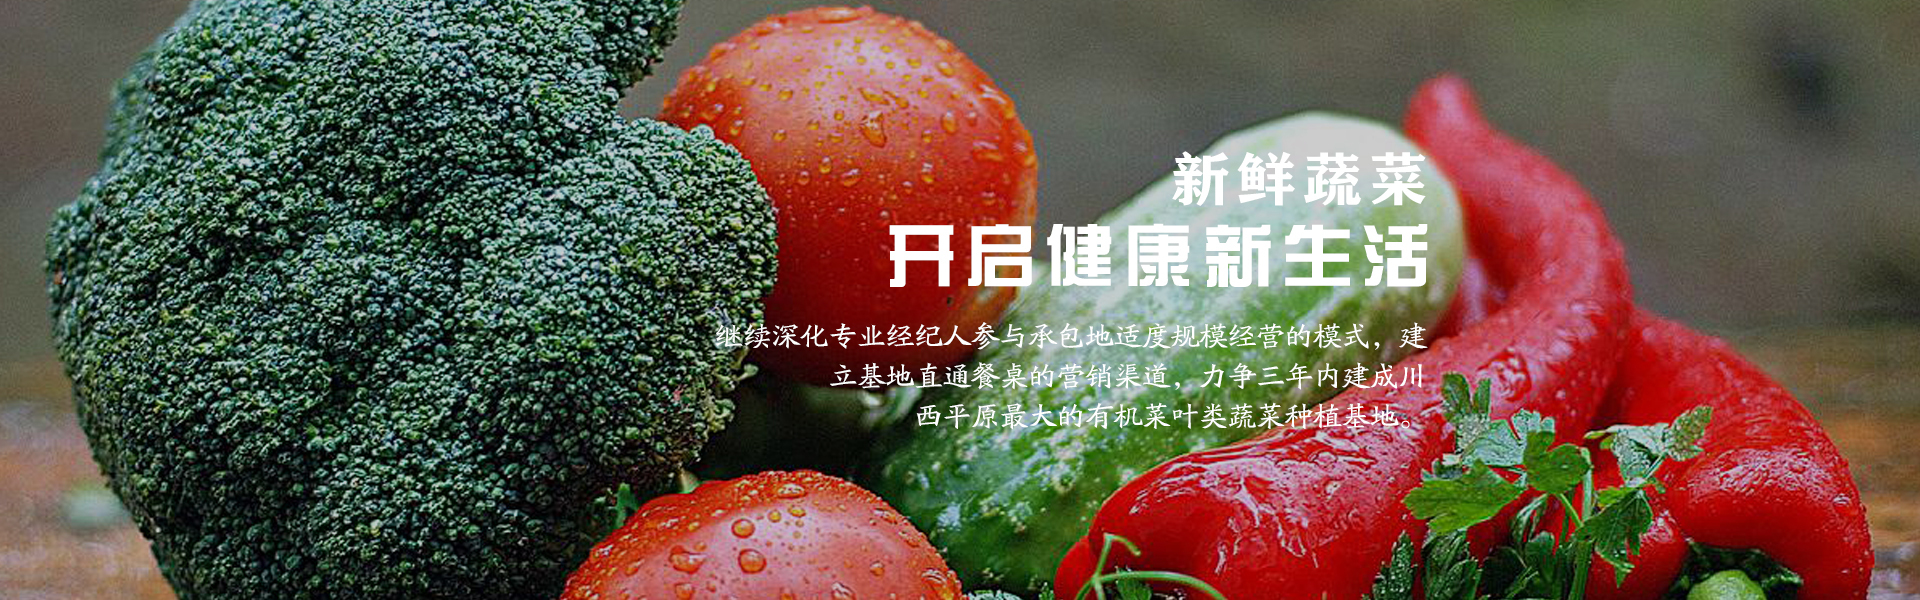 四川蔬菜_有机网-成都市录超农业有限责任公司